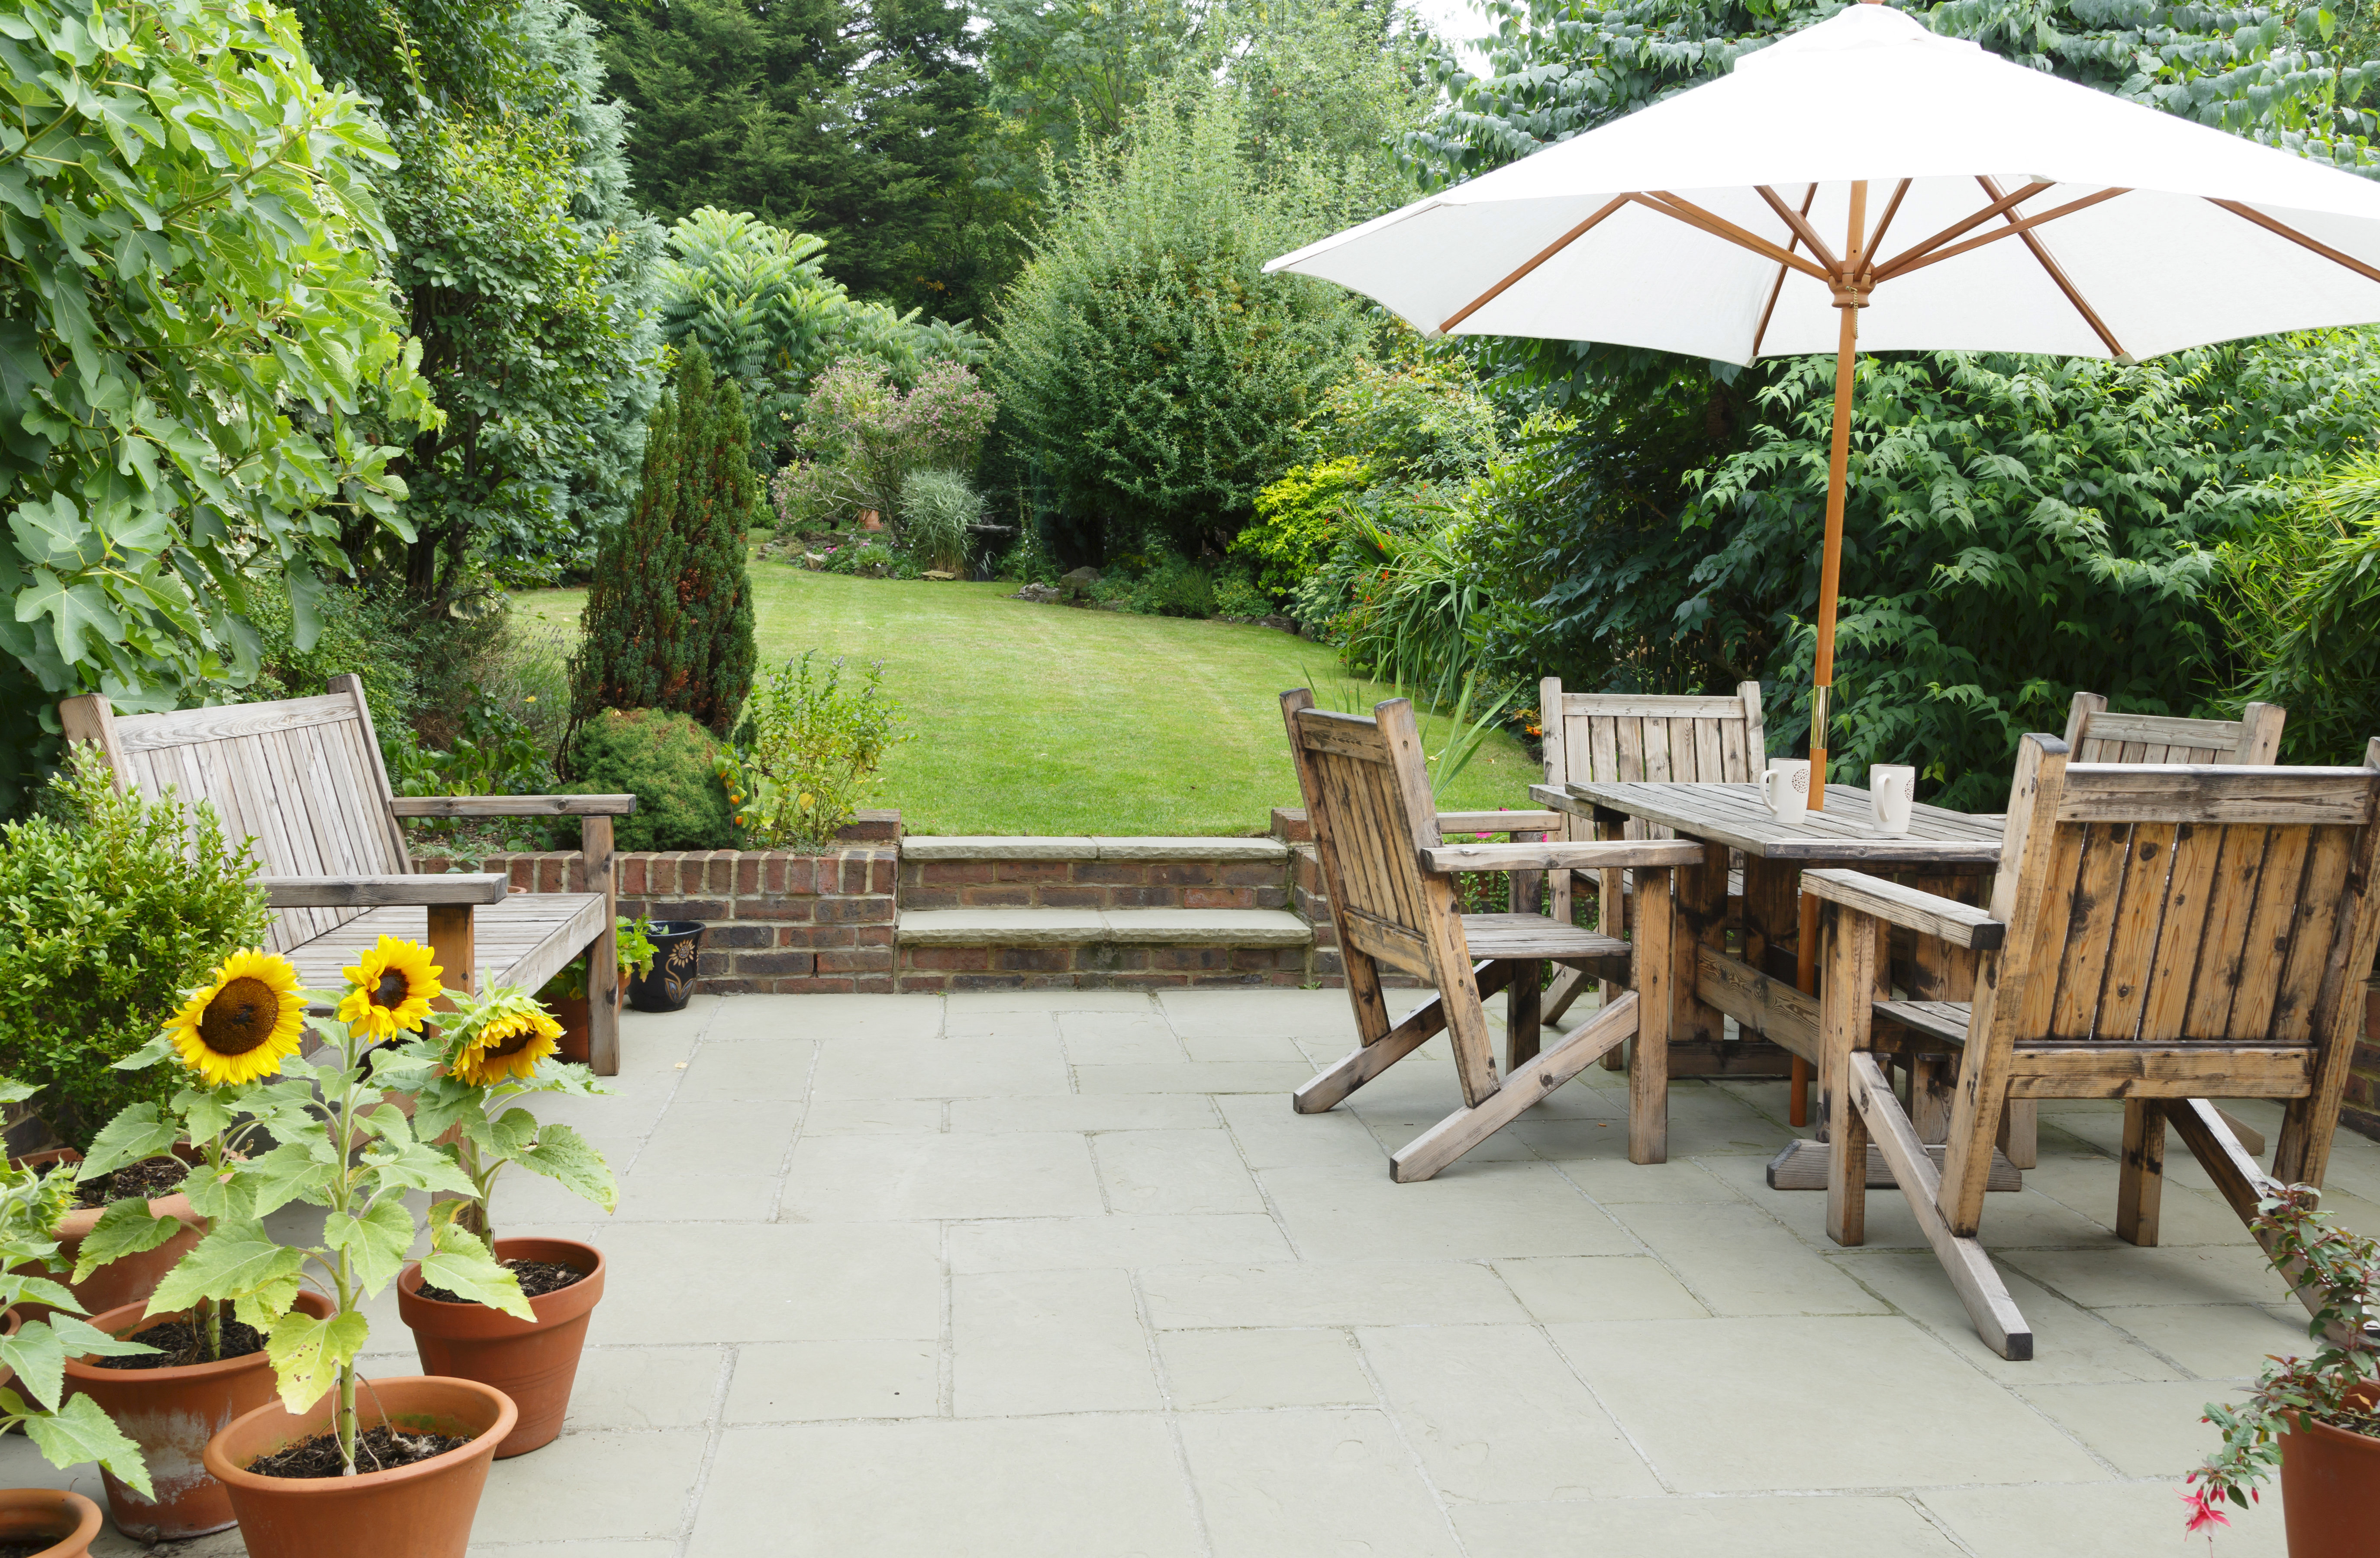 Sonnenschutz für Garten, Balkon und Terrasse